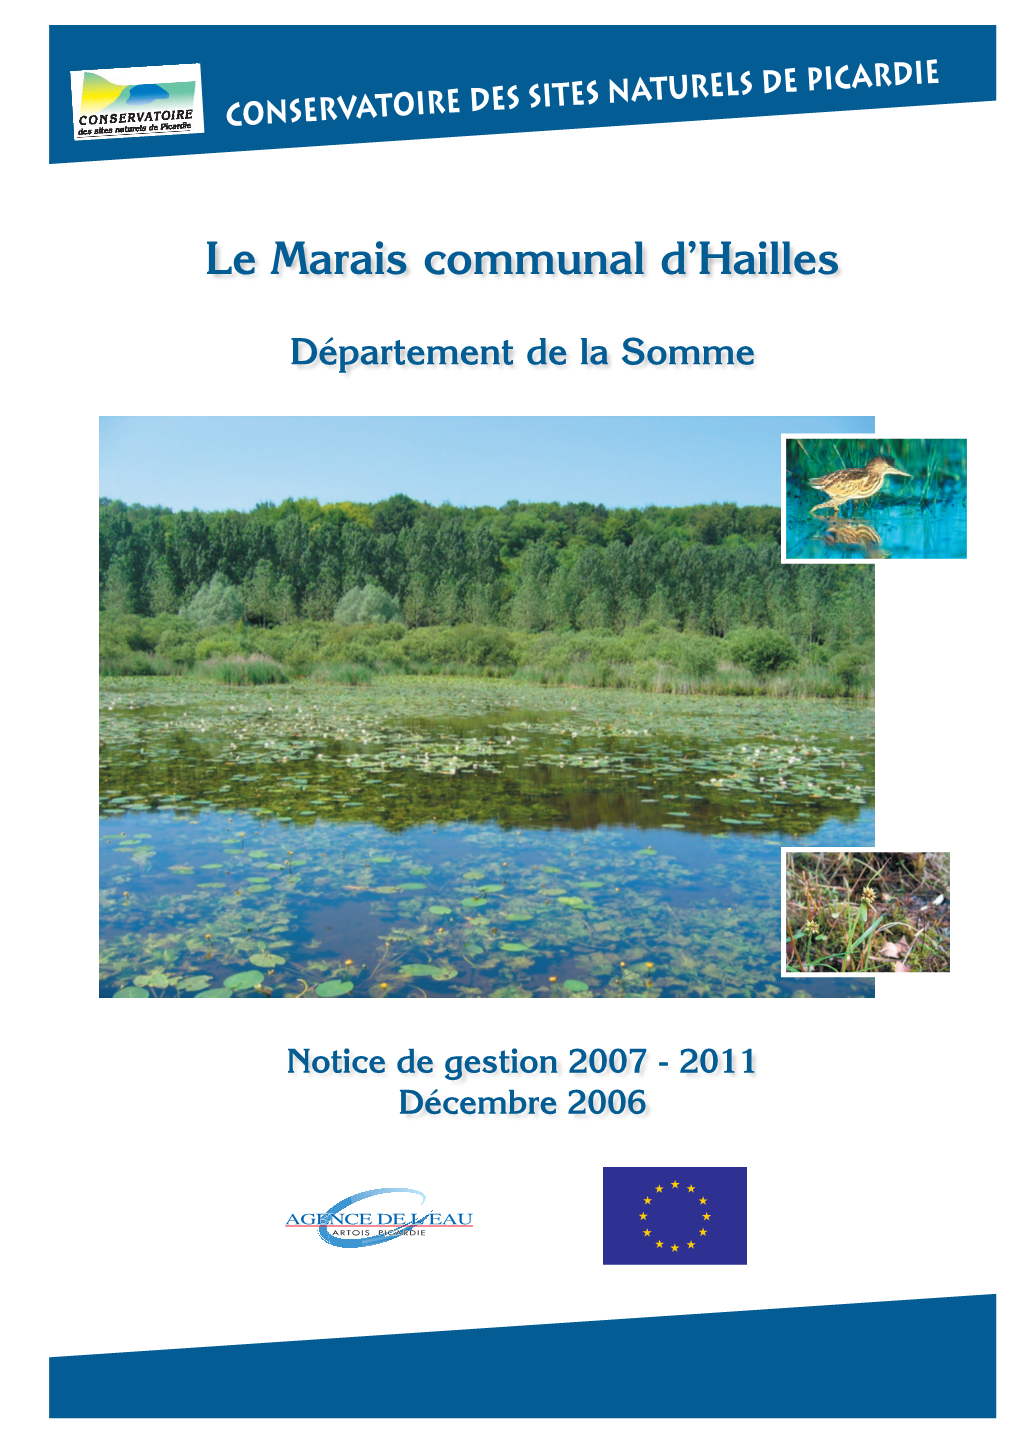 Le Marais Communal D'hailles (Somme) 0250 500 ¯ Mètres Notice De Gestion 2007-2011 - Décembre 2006 - Conservatoire Des Sites Naturels De Picardie SCAN25® - ©IGN Paris